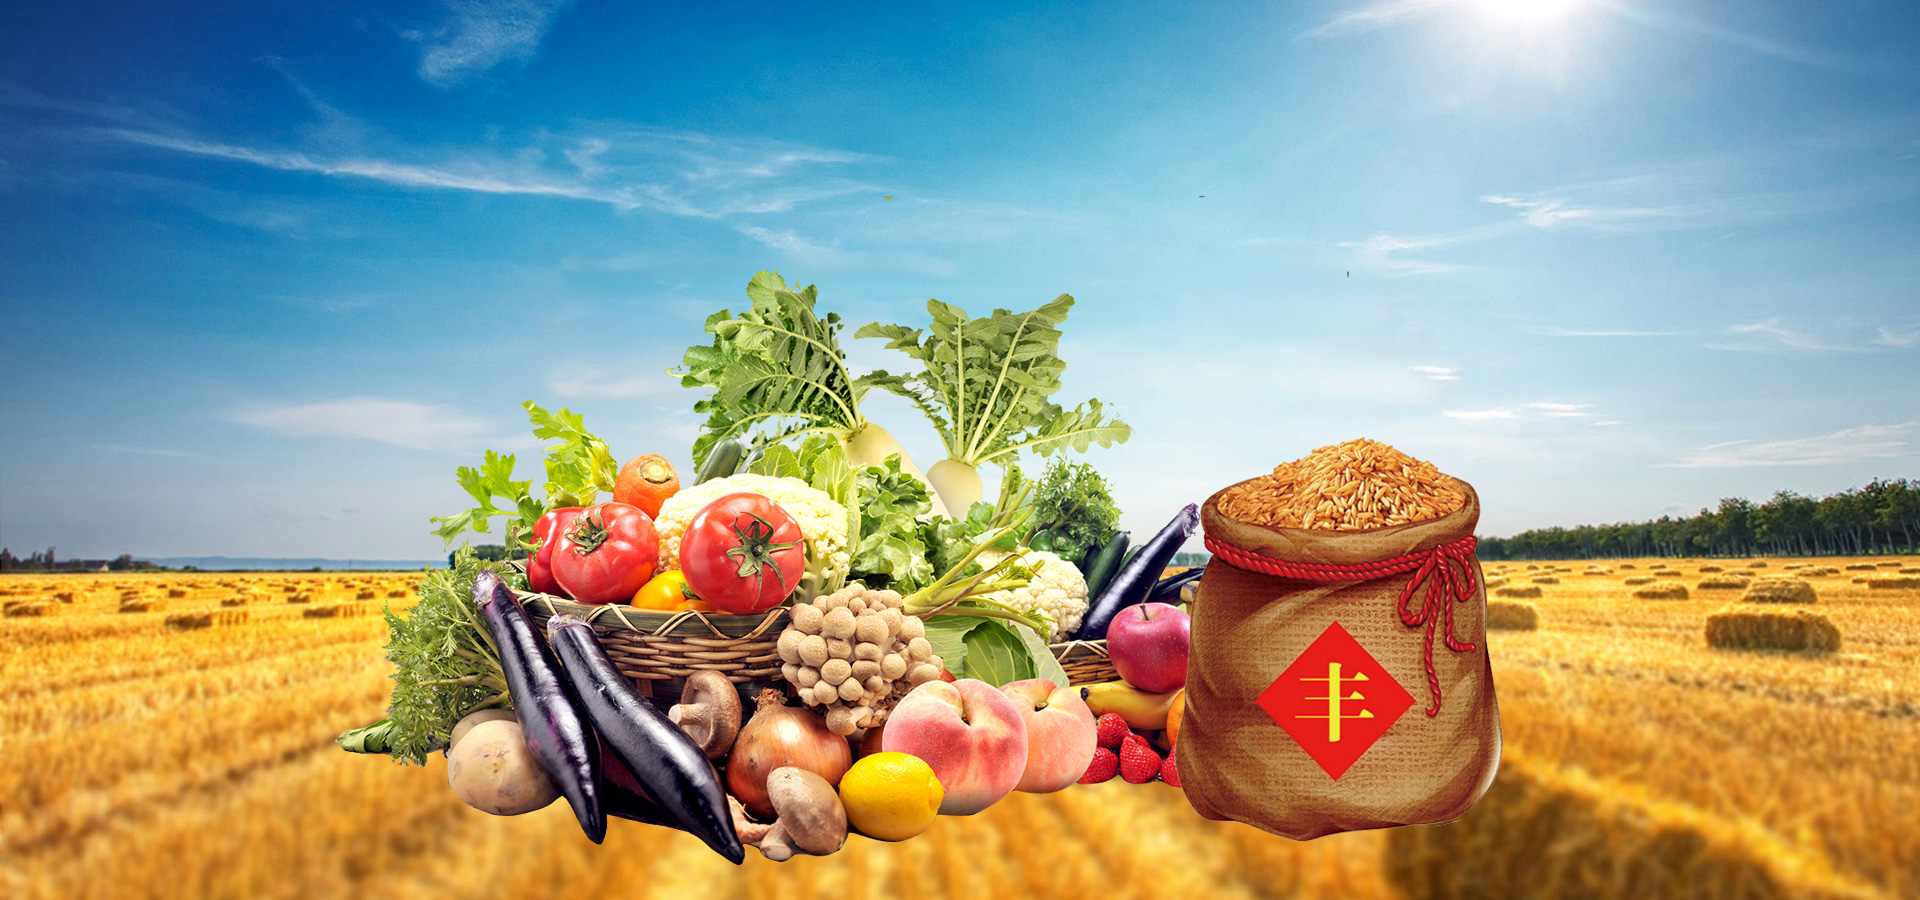 欧亚经济联盟计划建立有机农产品统一市场